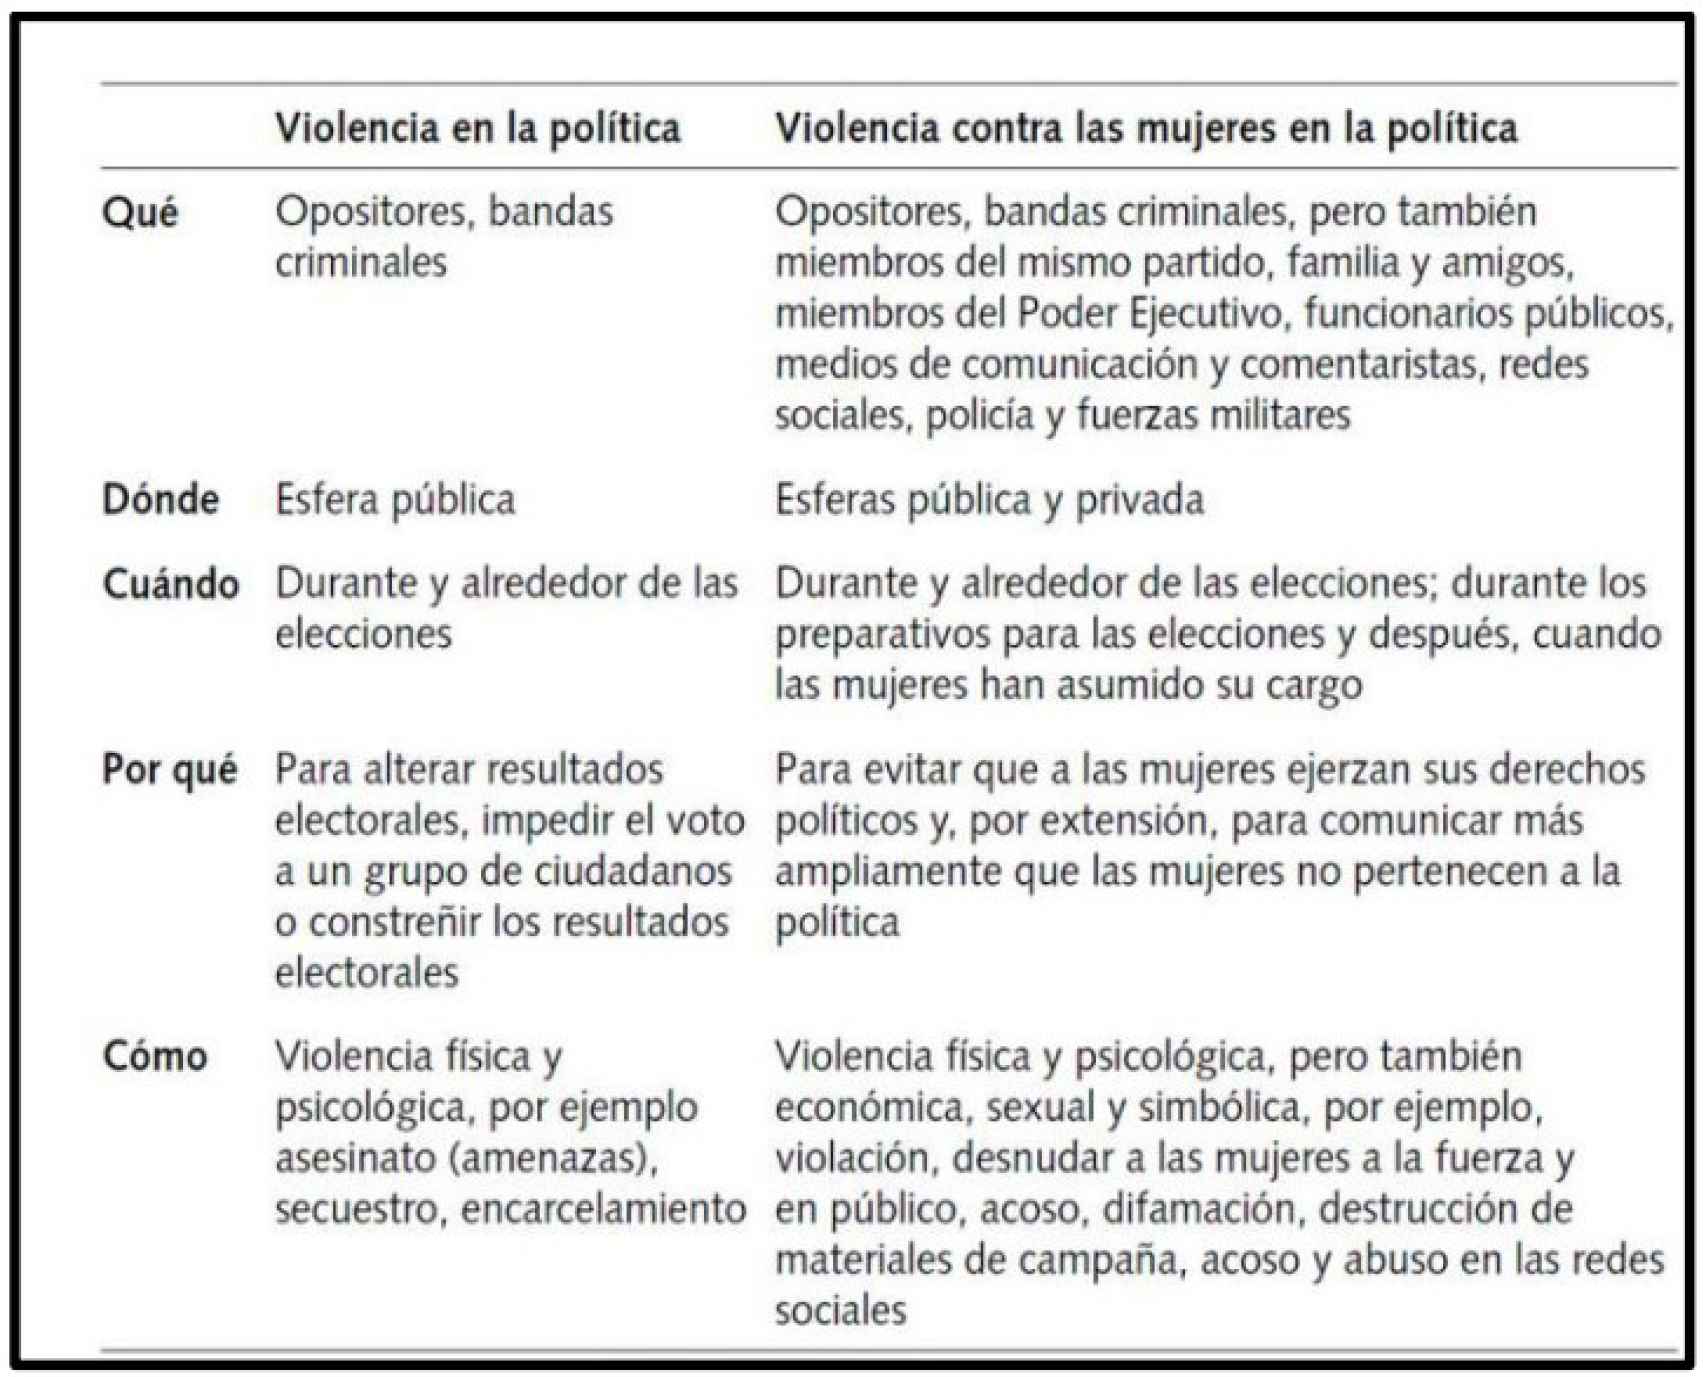 El informe encargado por el Ministerio de Igualdad sintetiza en este cuadro las formas más frecuentes de violencia política.